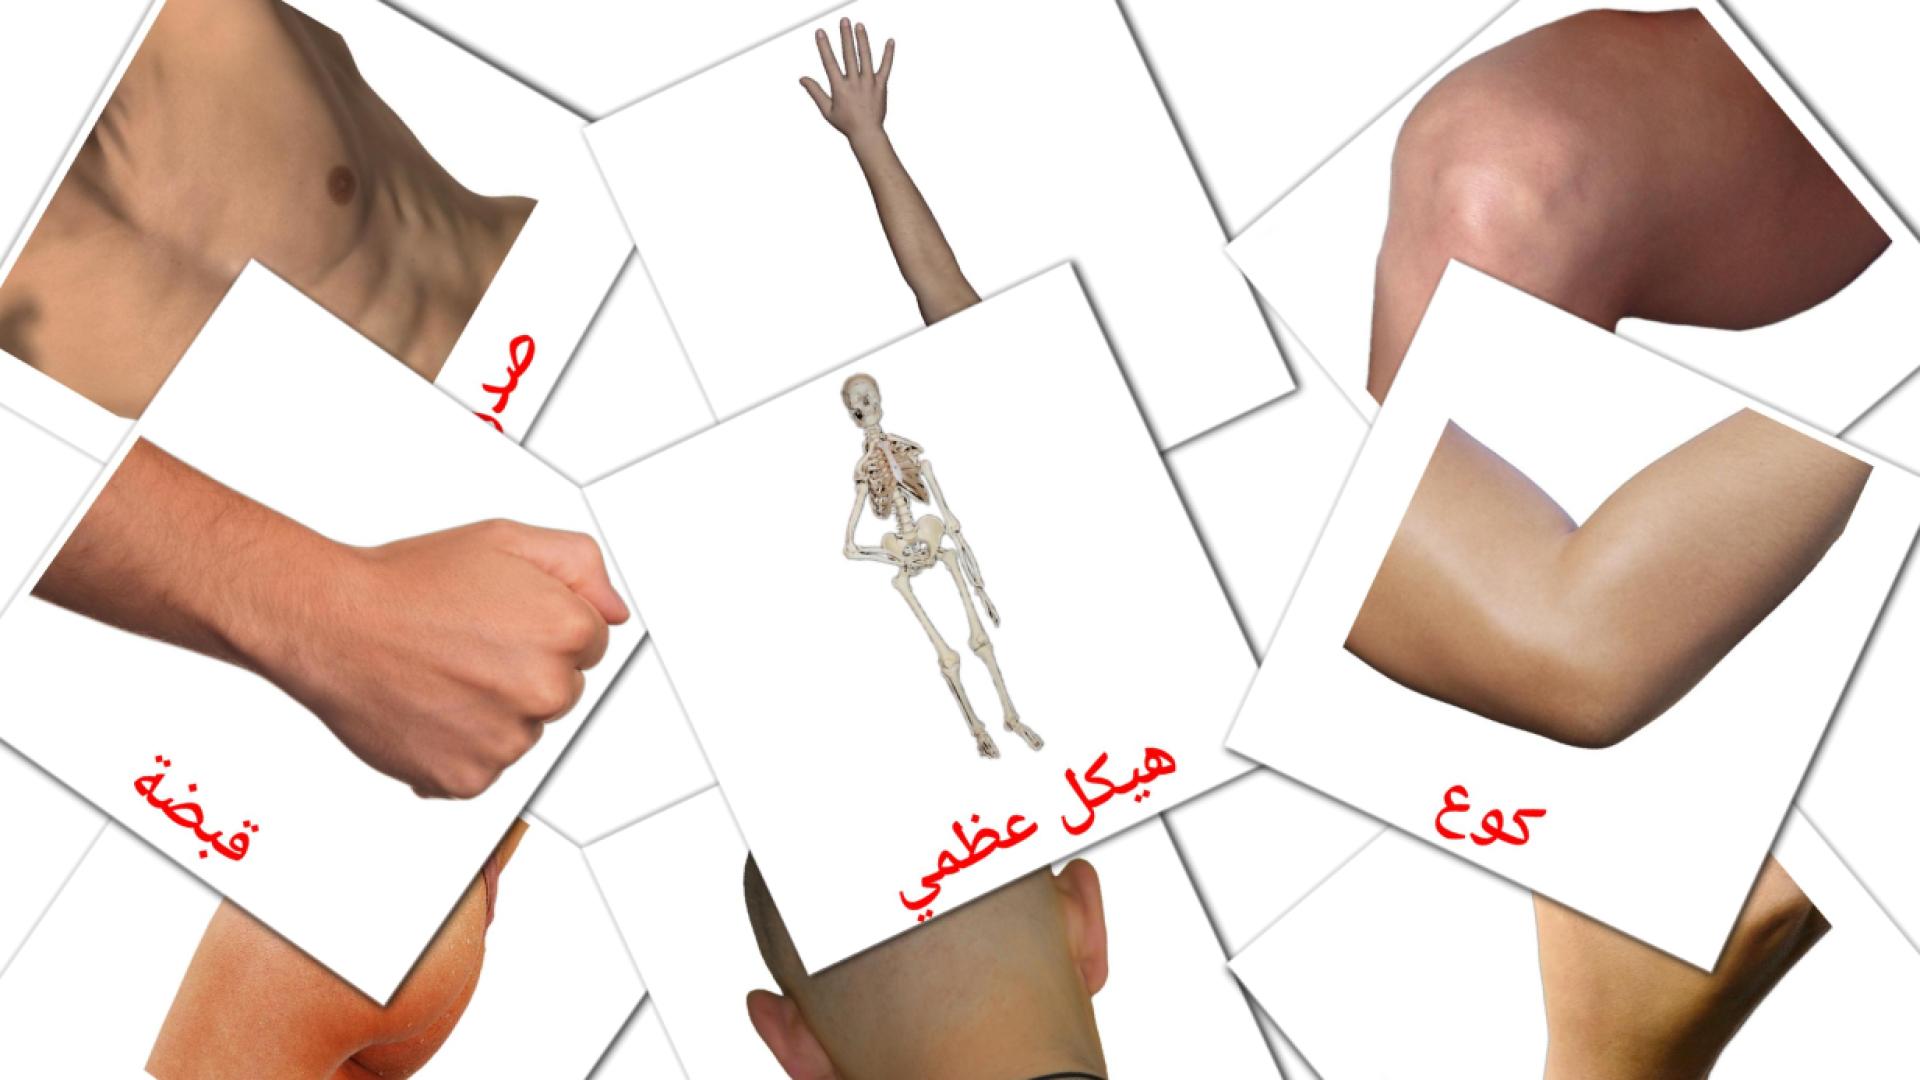 Partes do Corpo - Cartões de vocabulário árabe